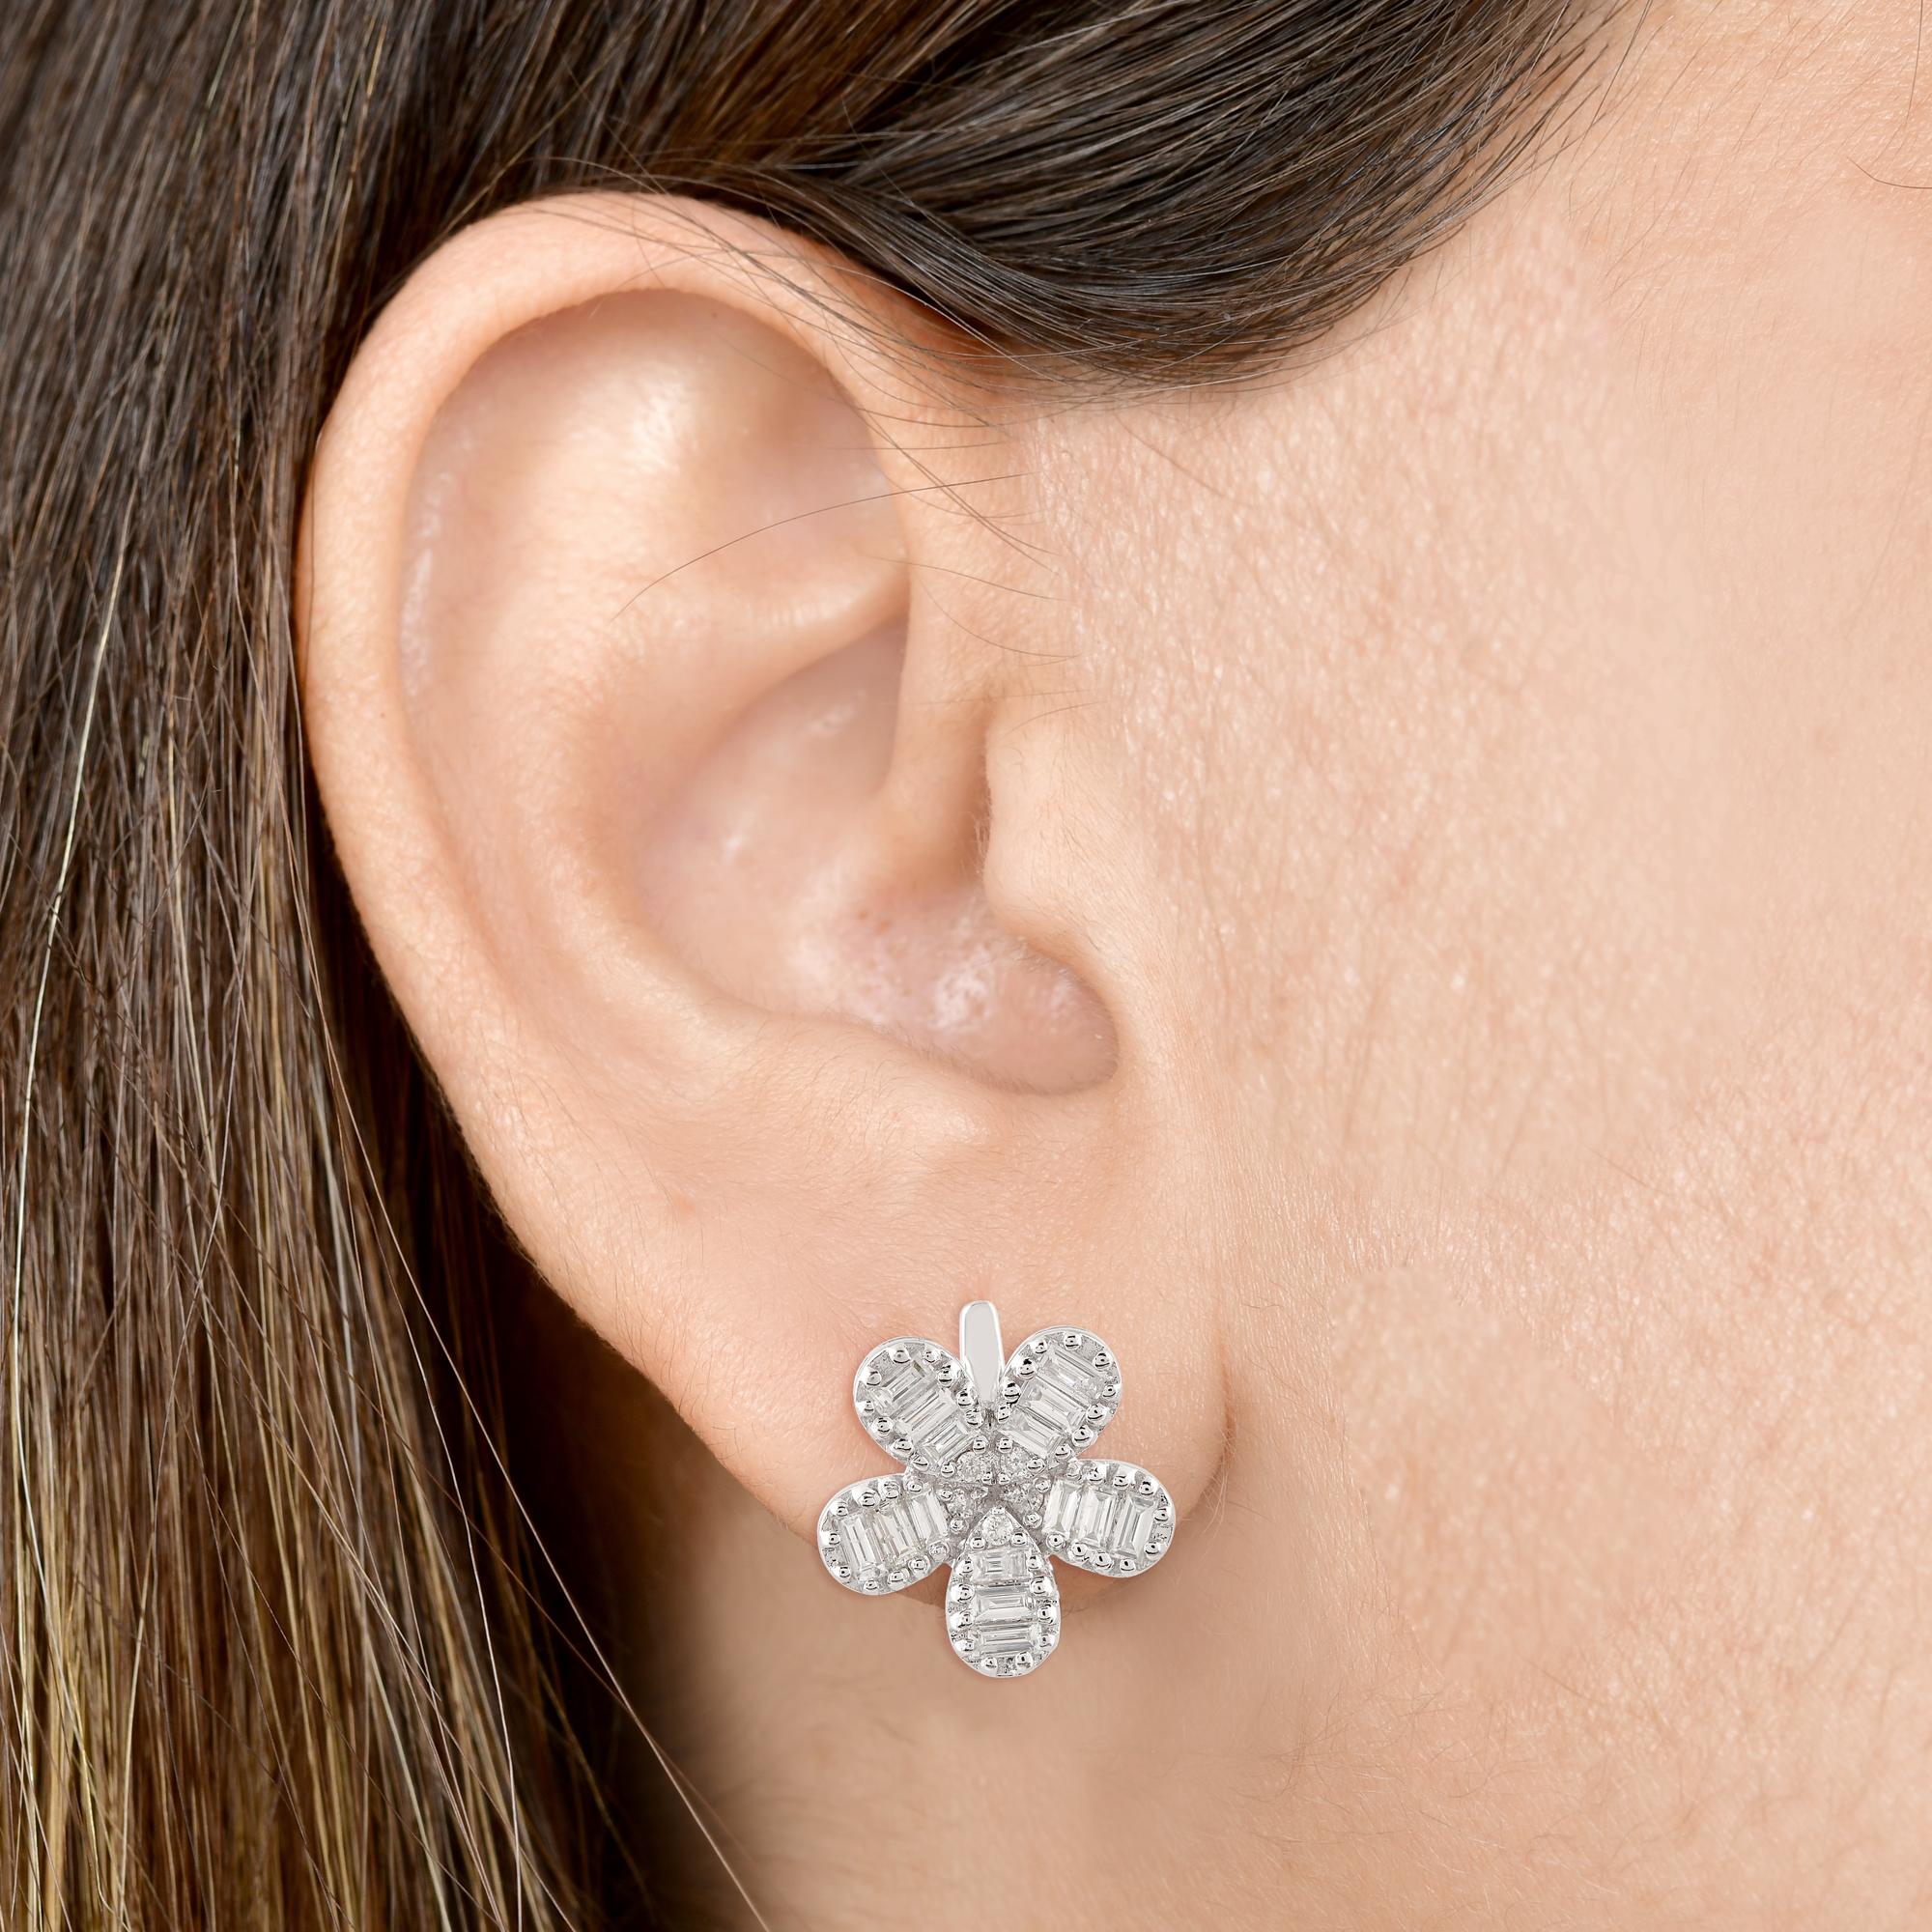 Baguette Cut 1.01 Carat Baguette Diamond Flower Stud Earrings Solid 14k White Gold Jewelry For Sale